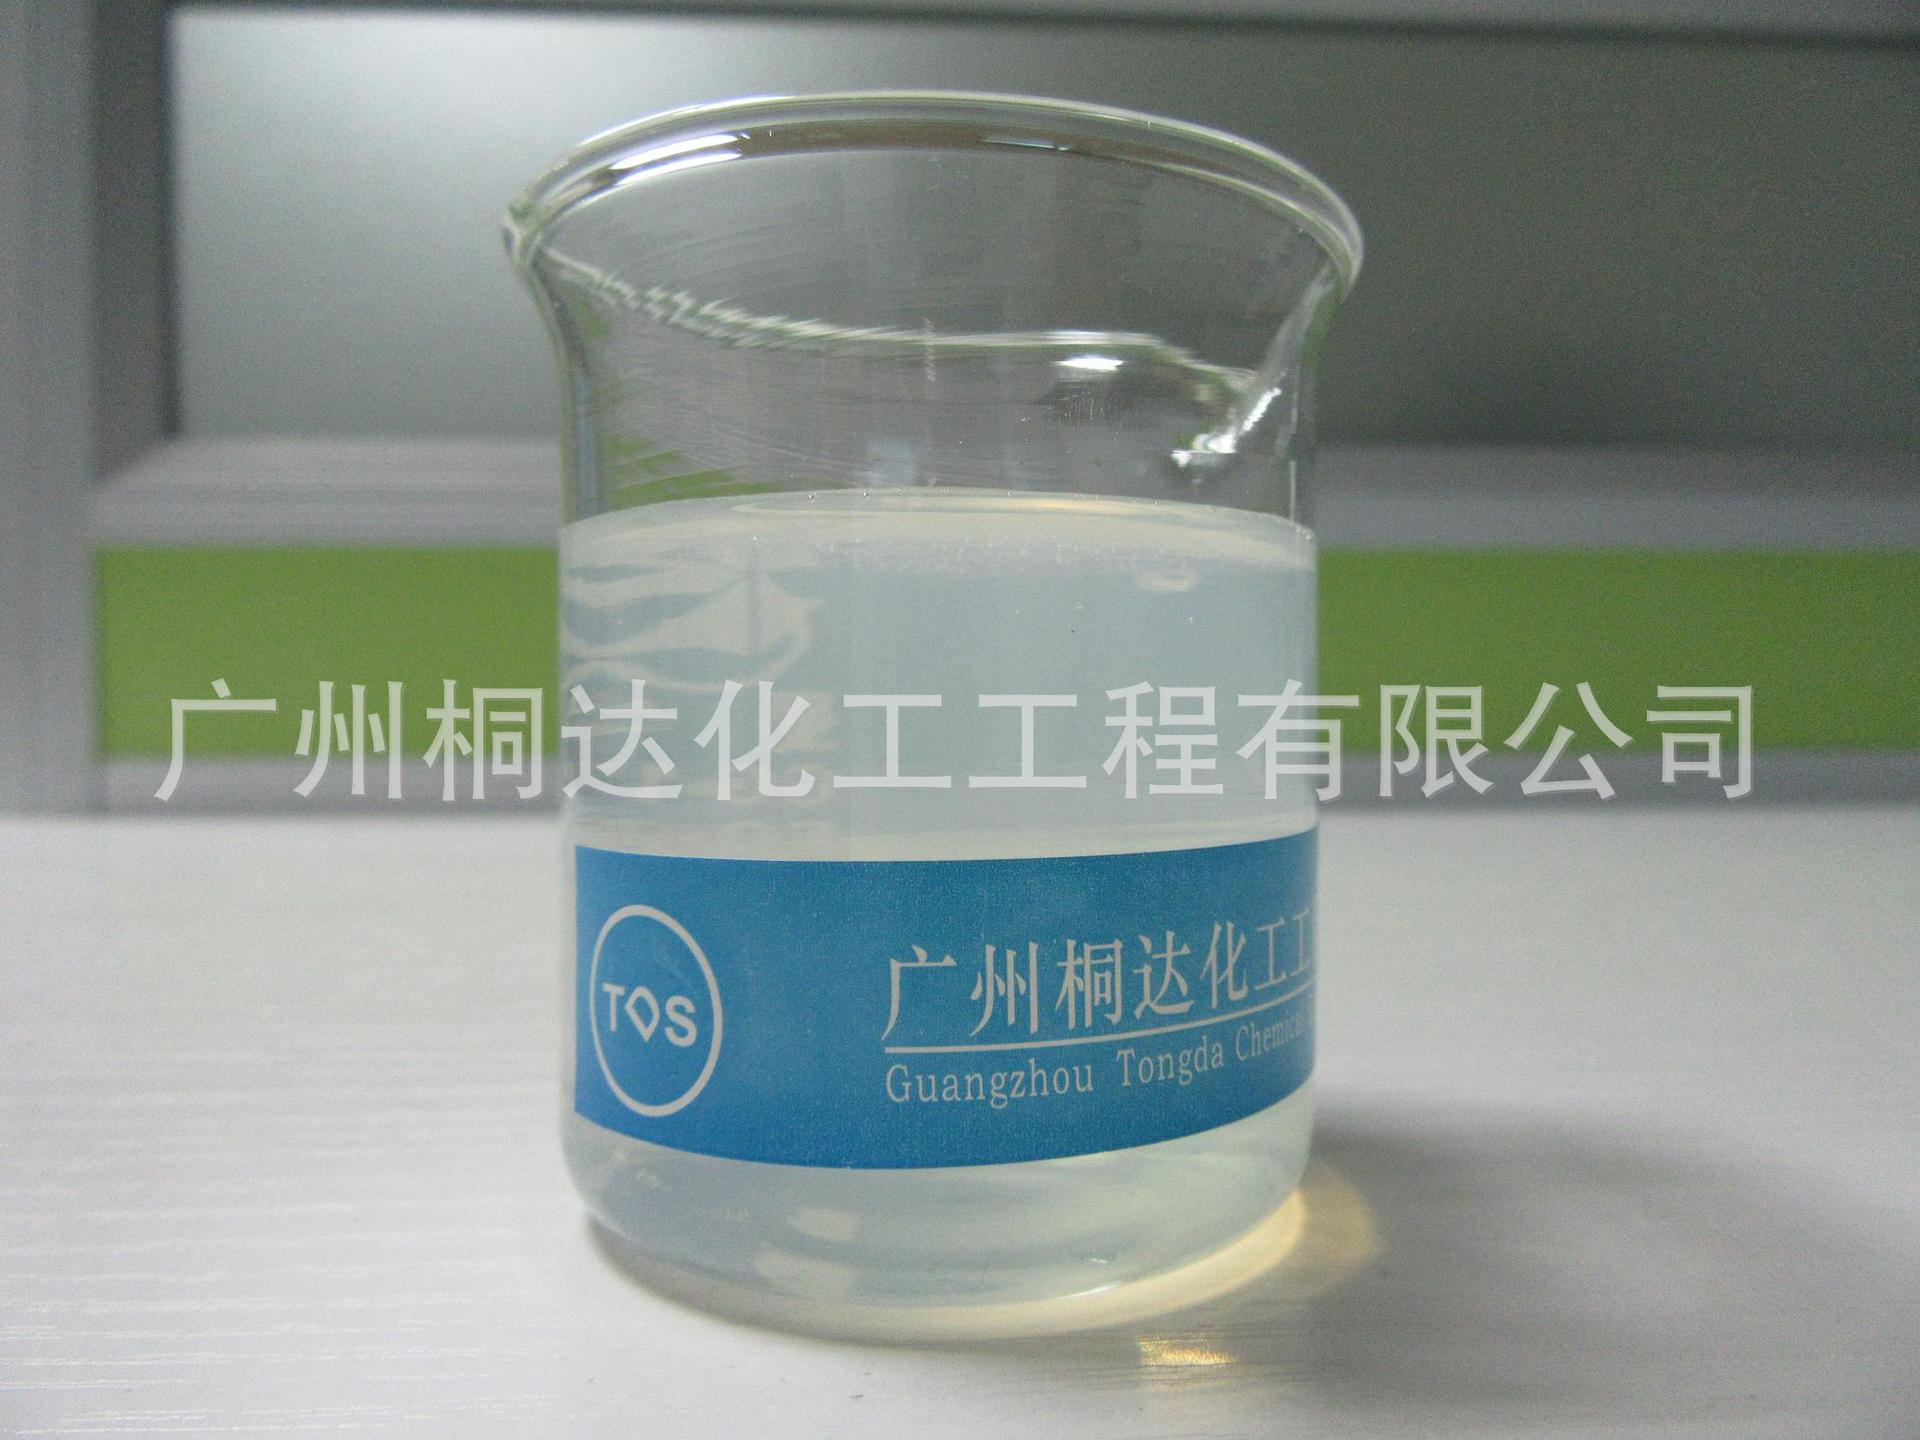 RRJ-211 柔软剂、织物超蓬松柔软剂 适用于纯棉、涤纶、涤棉等